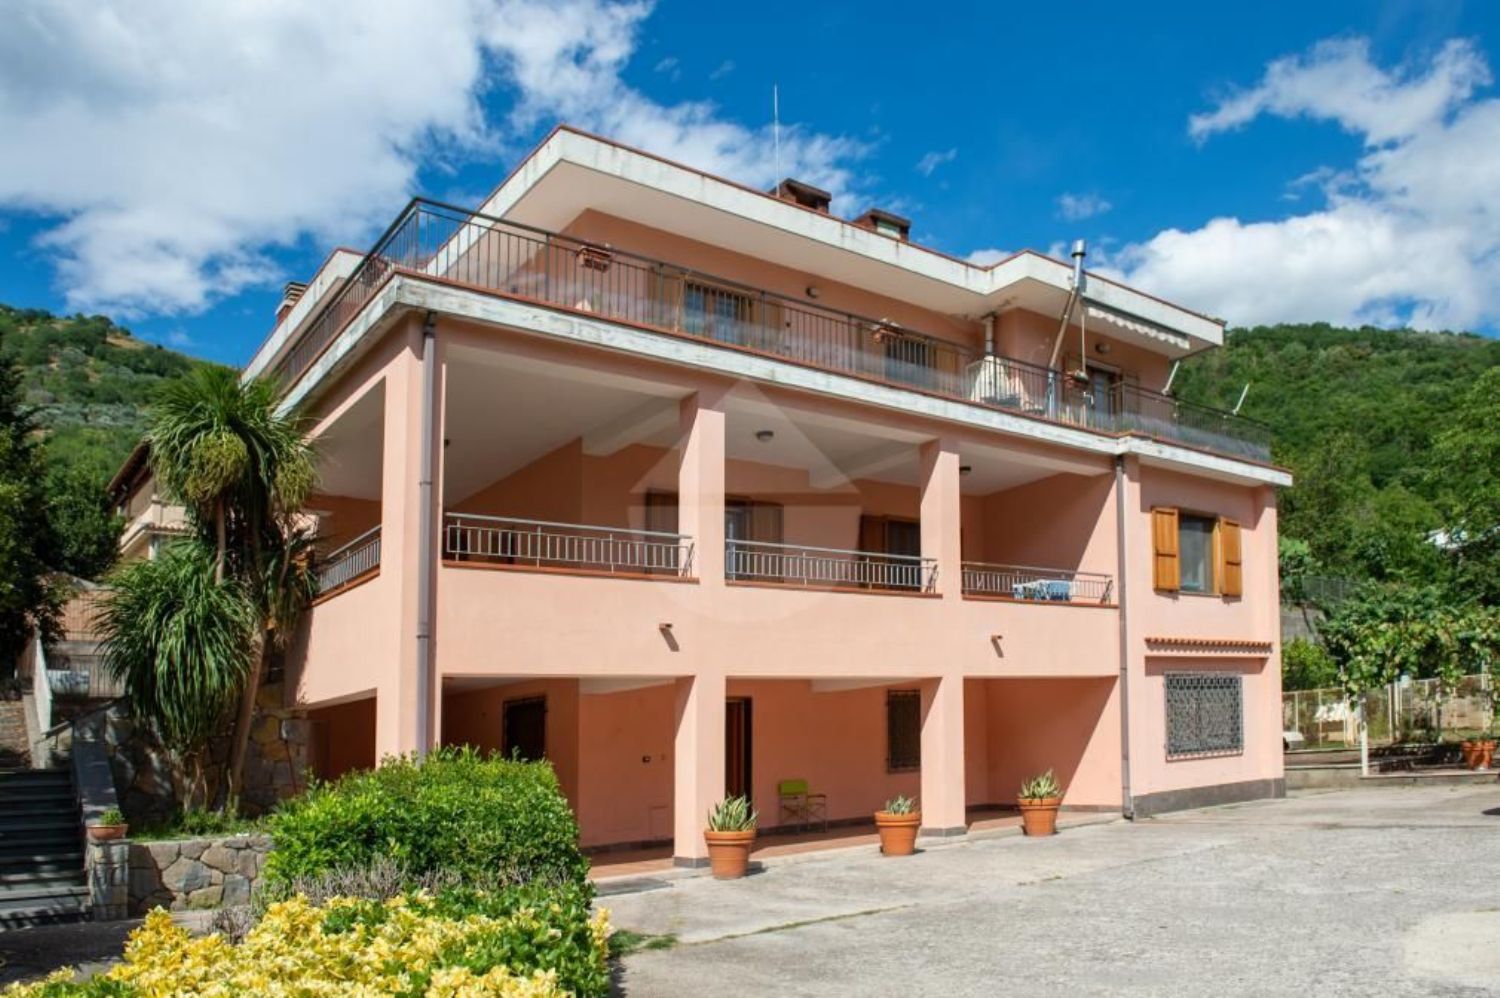 Villa Bifamiliare in vendita a Mercato San Severino, 11 locali, prezzo € 650.000 | PortaleAgenzieImmobiliari.it